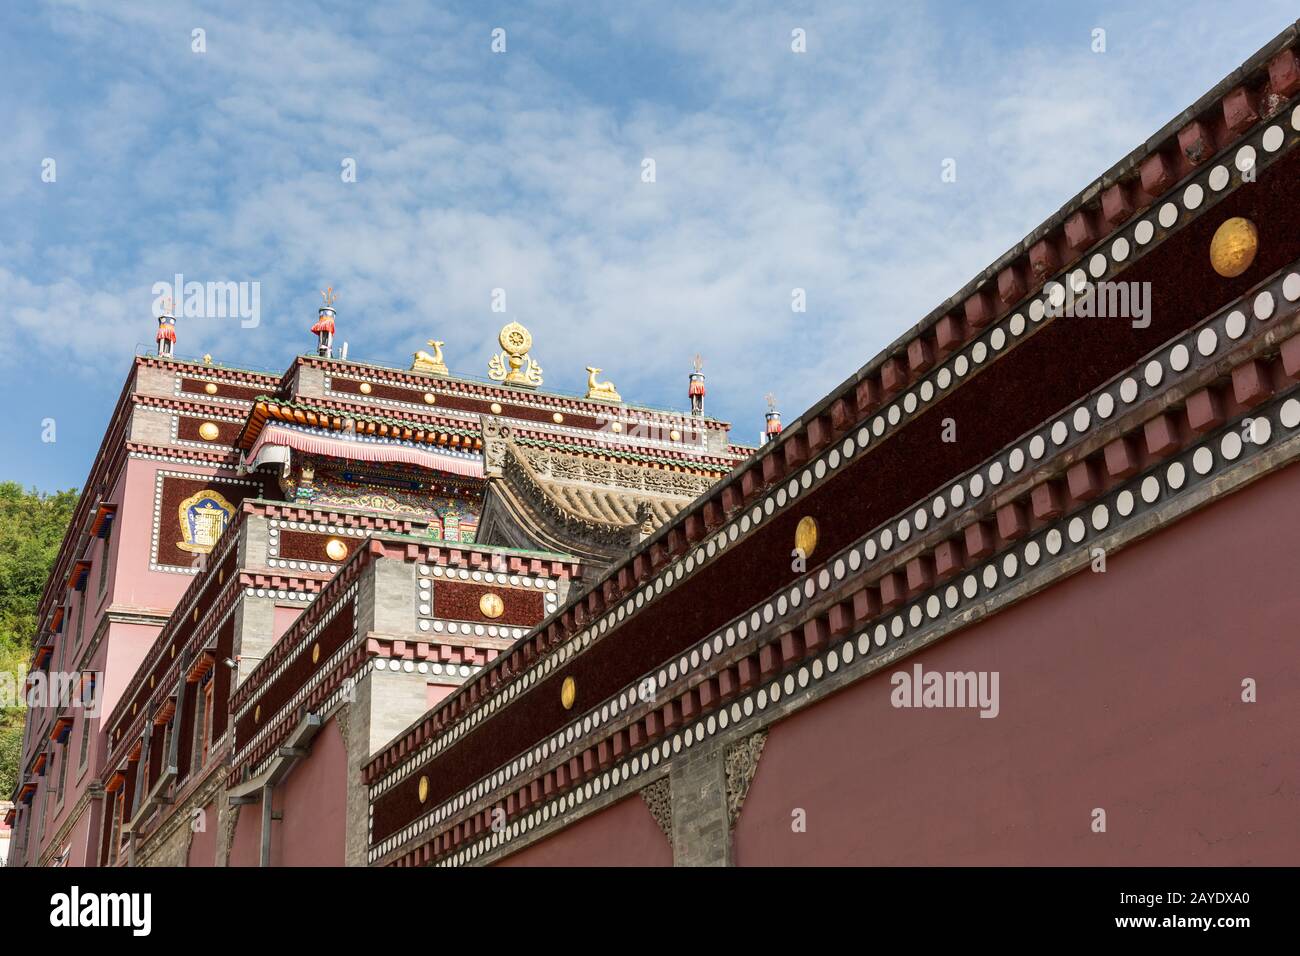 tibetan buddhist architecture in kumbum monastery Stock Photo